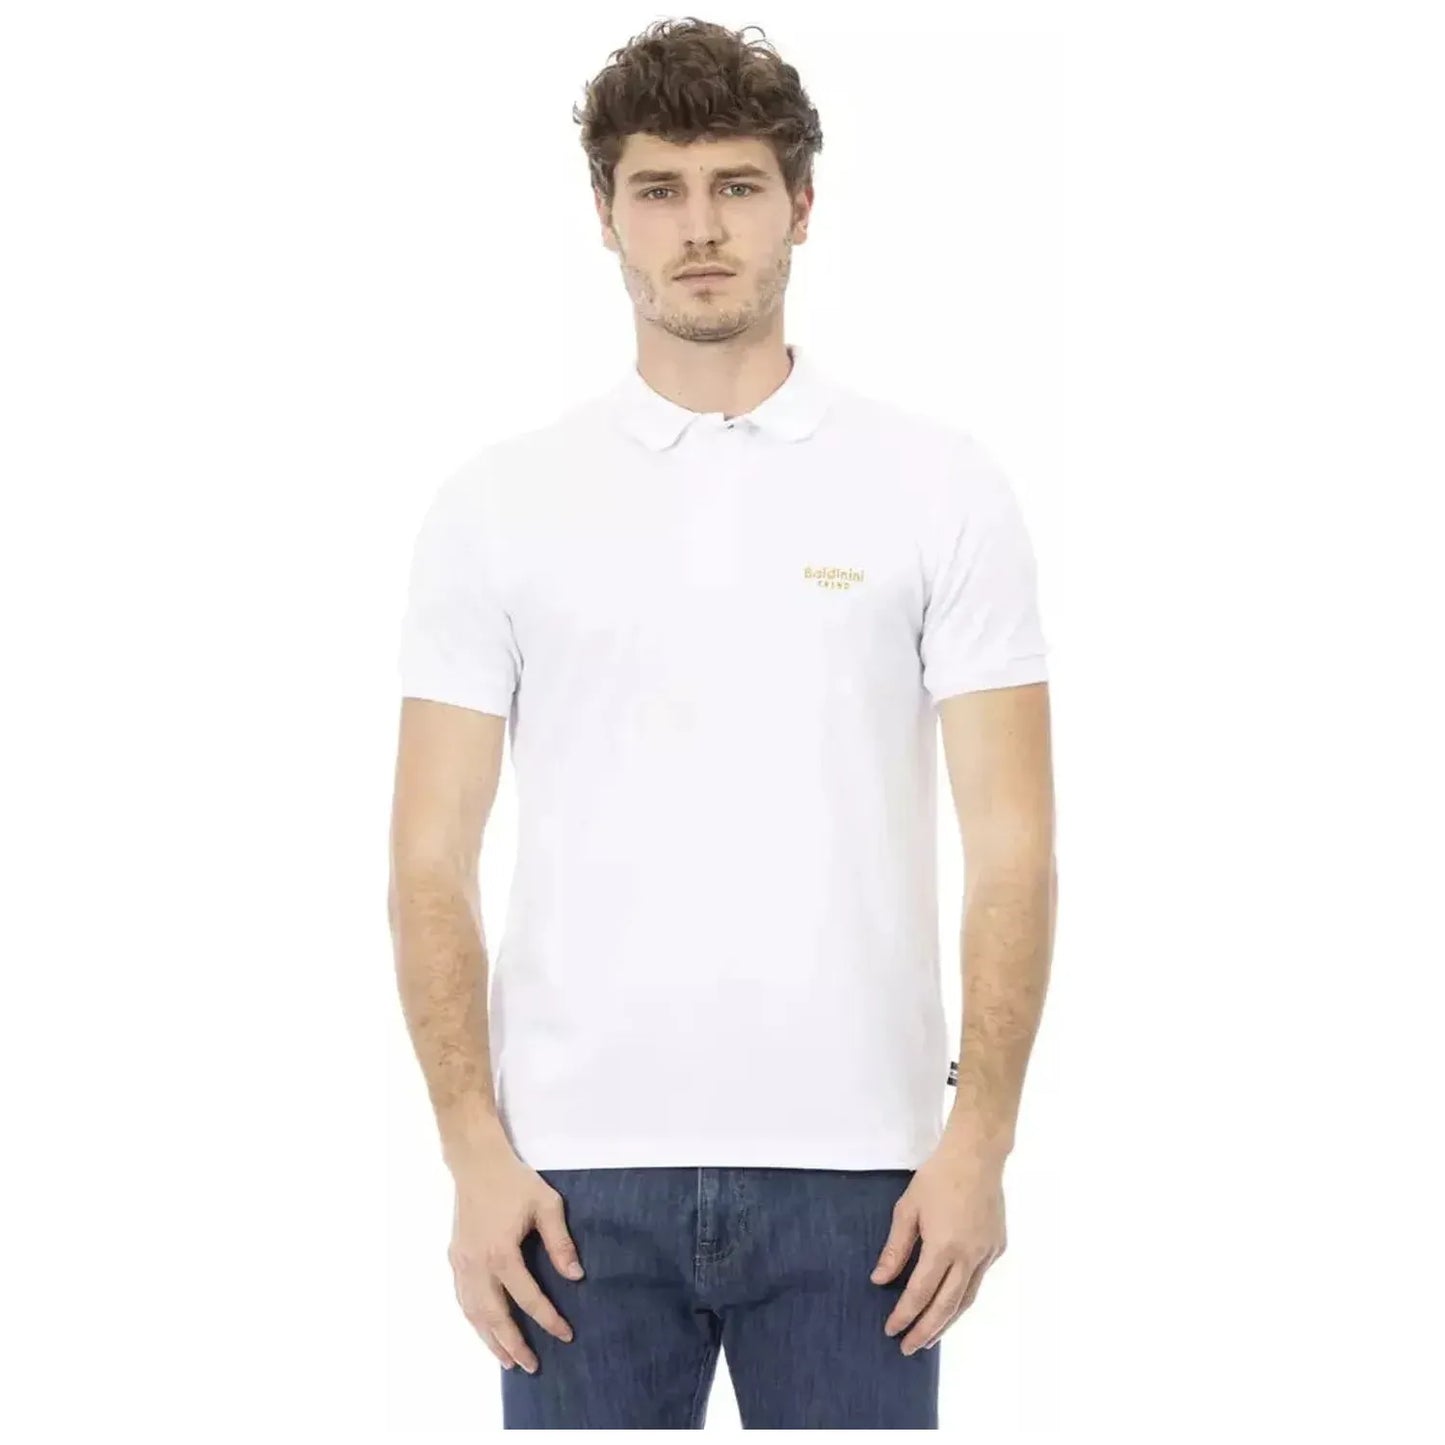 Baldinini Trend Elegant White Cotton Polo with Chic Embroidery white-cotton-polo-shirt-20